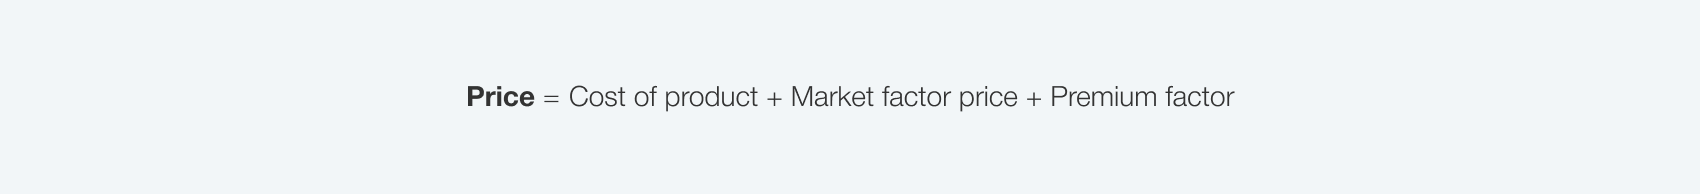 market-based-price-formula